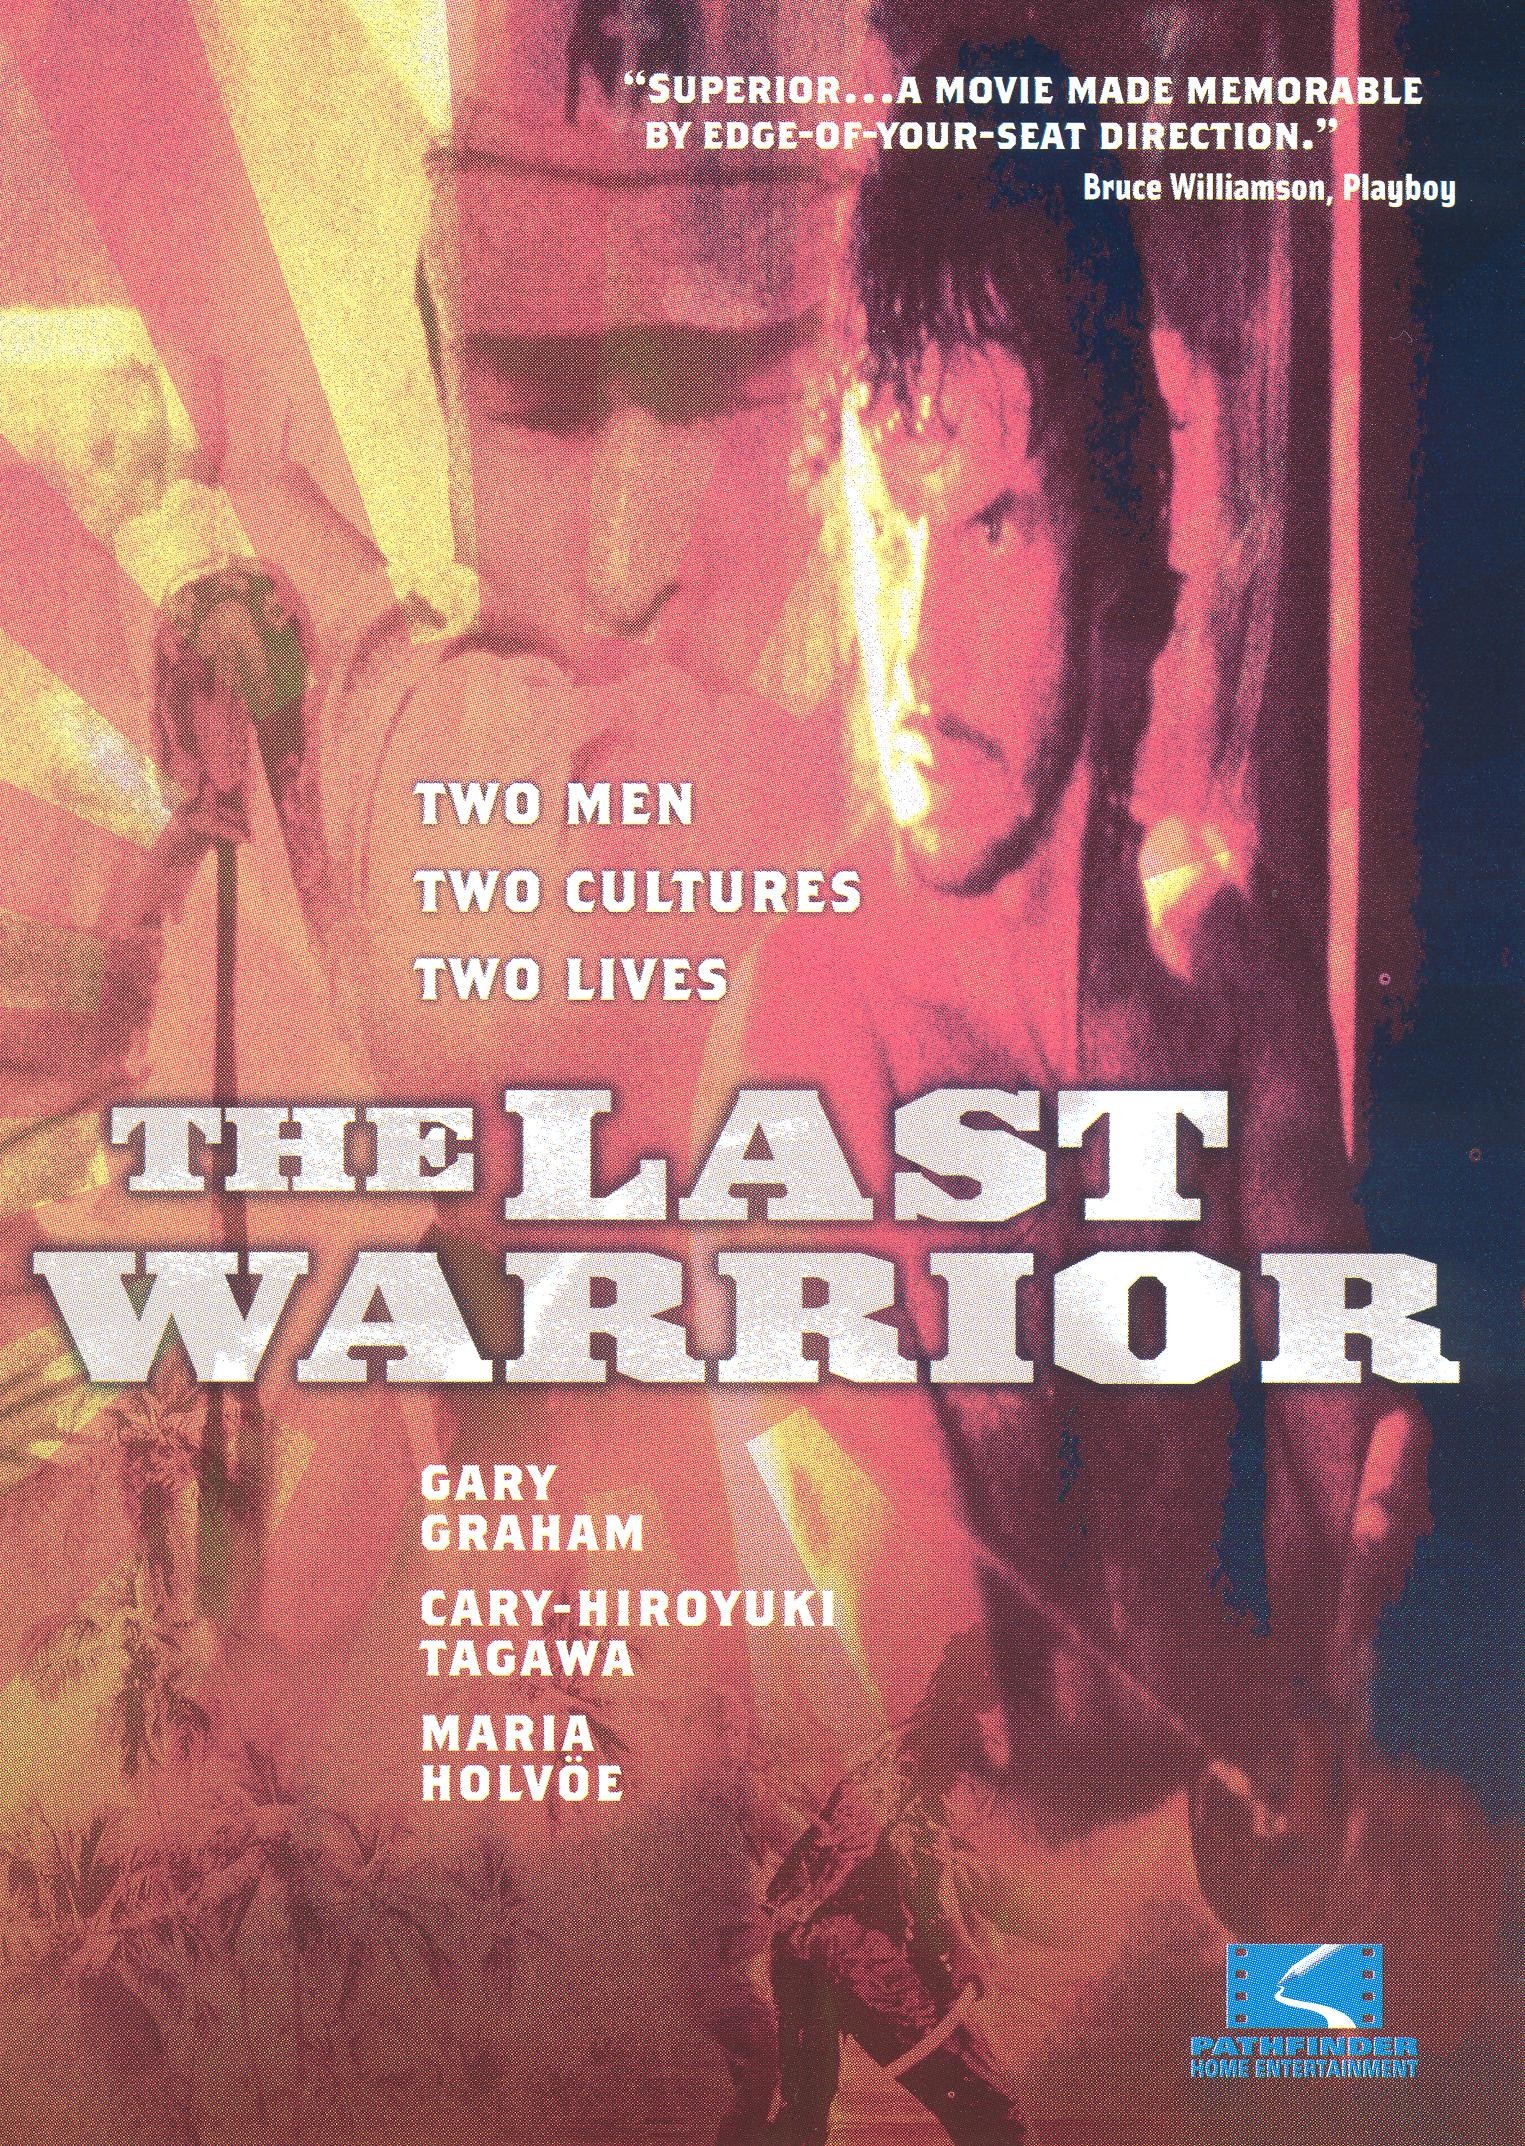 The Last Warrior Coastwatcher Movie Reviews